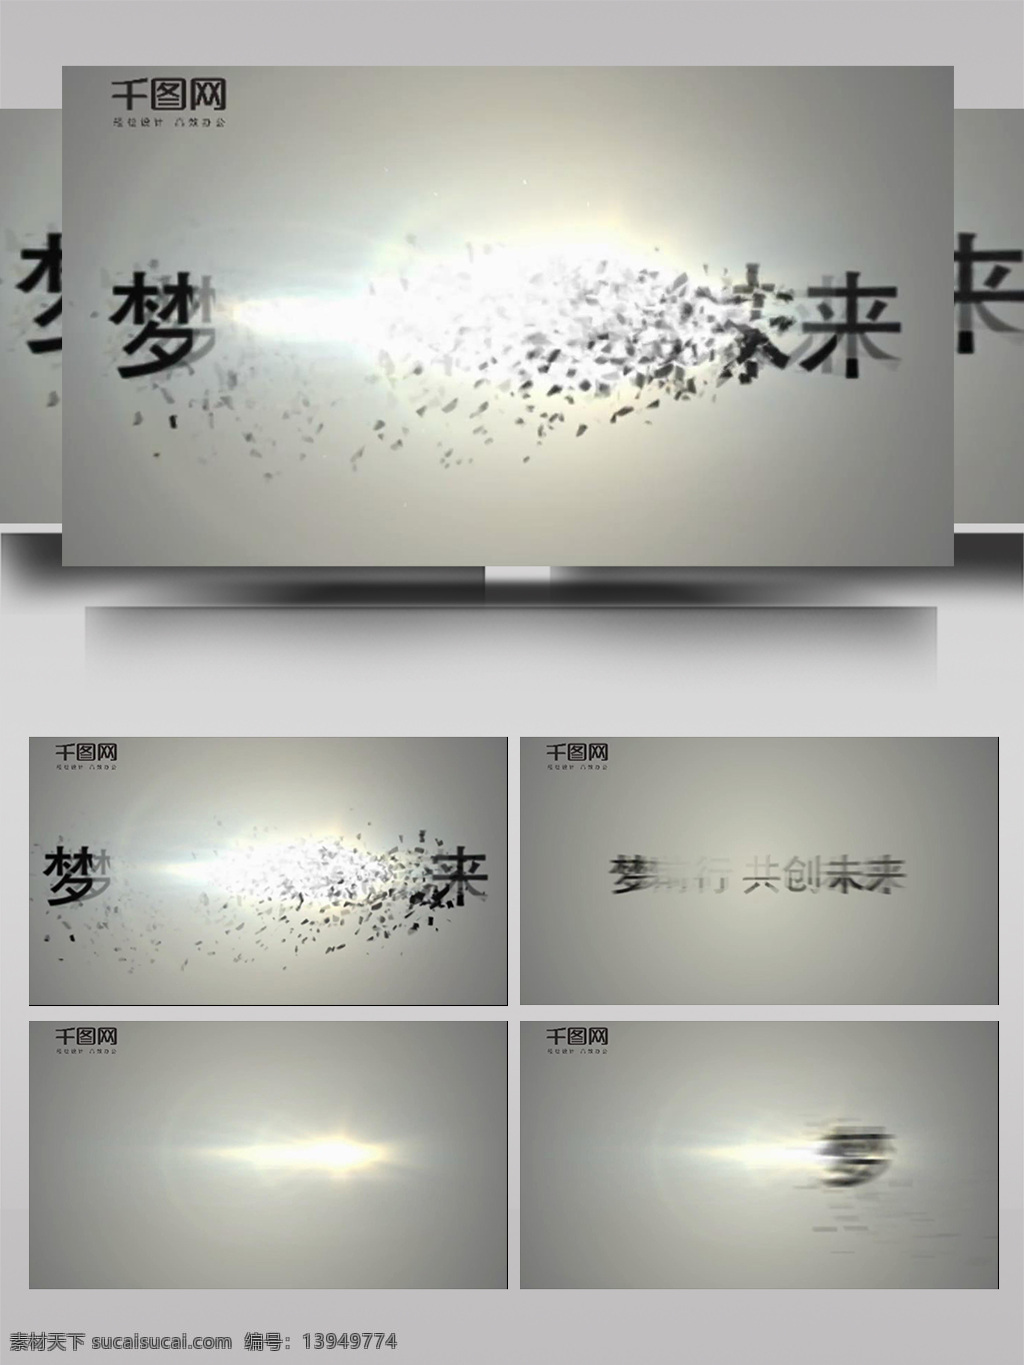 文字 扩散 波动 破碎 ae 模板 简洁 立体 彩色 大气 3d标志 旋转 散开 组合 光影 动态 动画 展示 片头 转场 过度